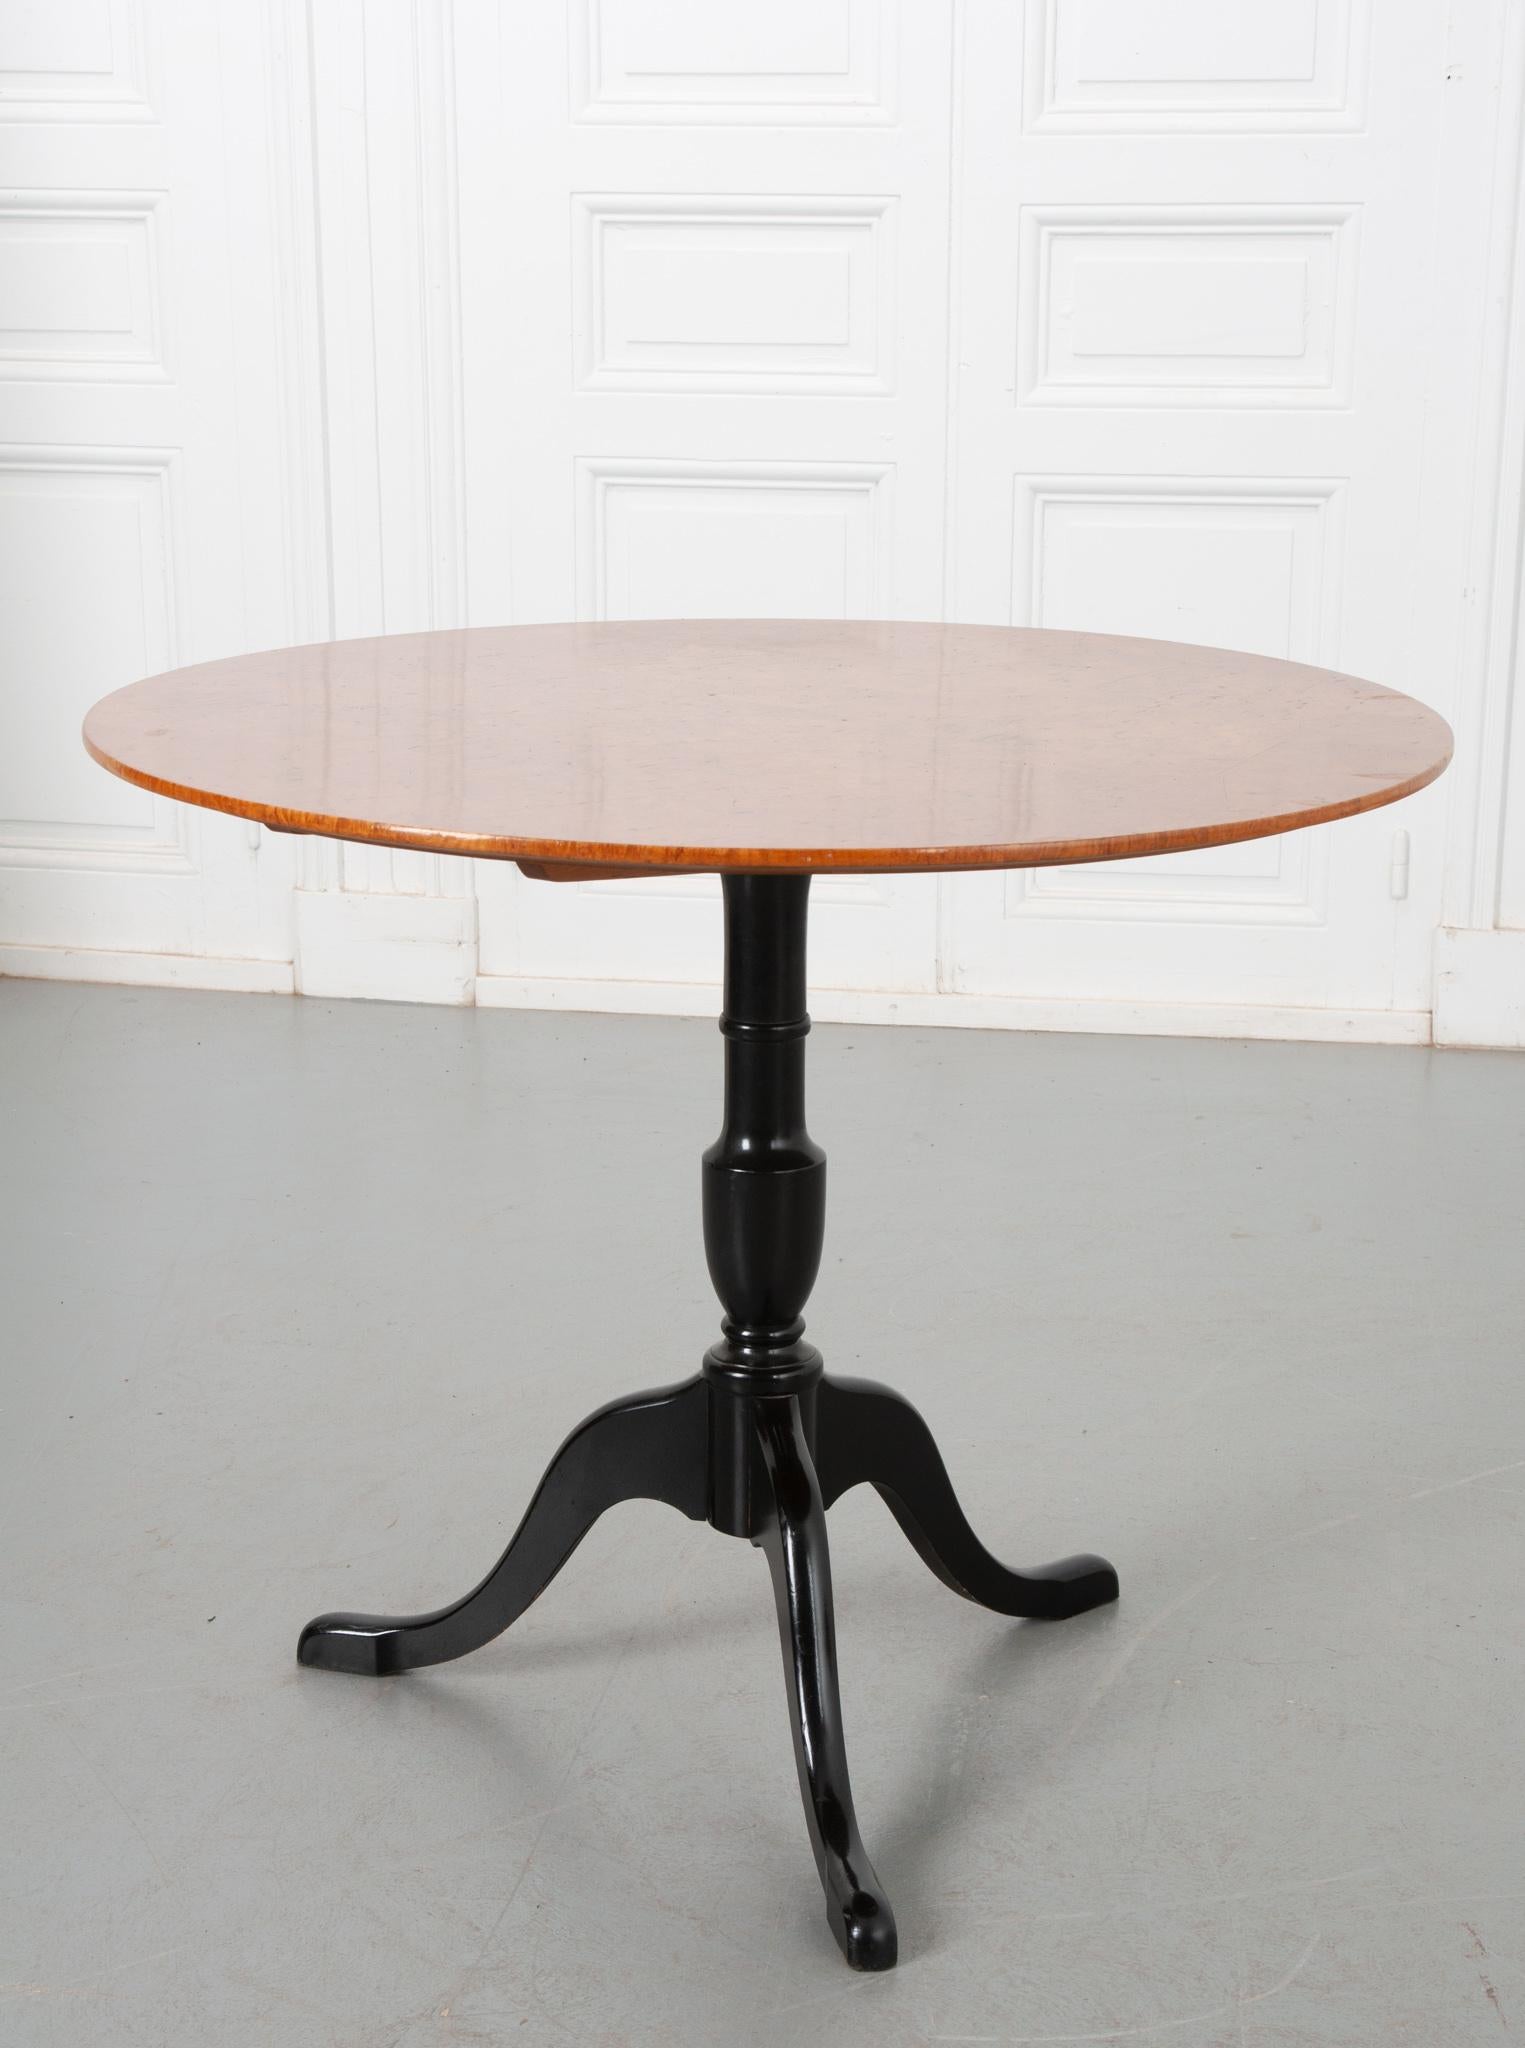 Une table à plateau basculant accrocheuse de Suède, vers 1900. Le plateau est fait de bouleau vibrant qui contraste magnifiquement avec la base en ébène au pied souple. Cette table a la capacité d'être rangée lorsqu'elle n'est pas utilisée grâce au